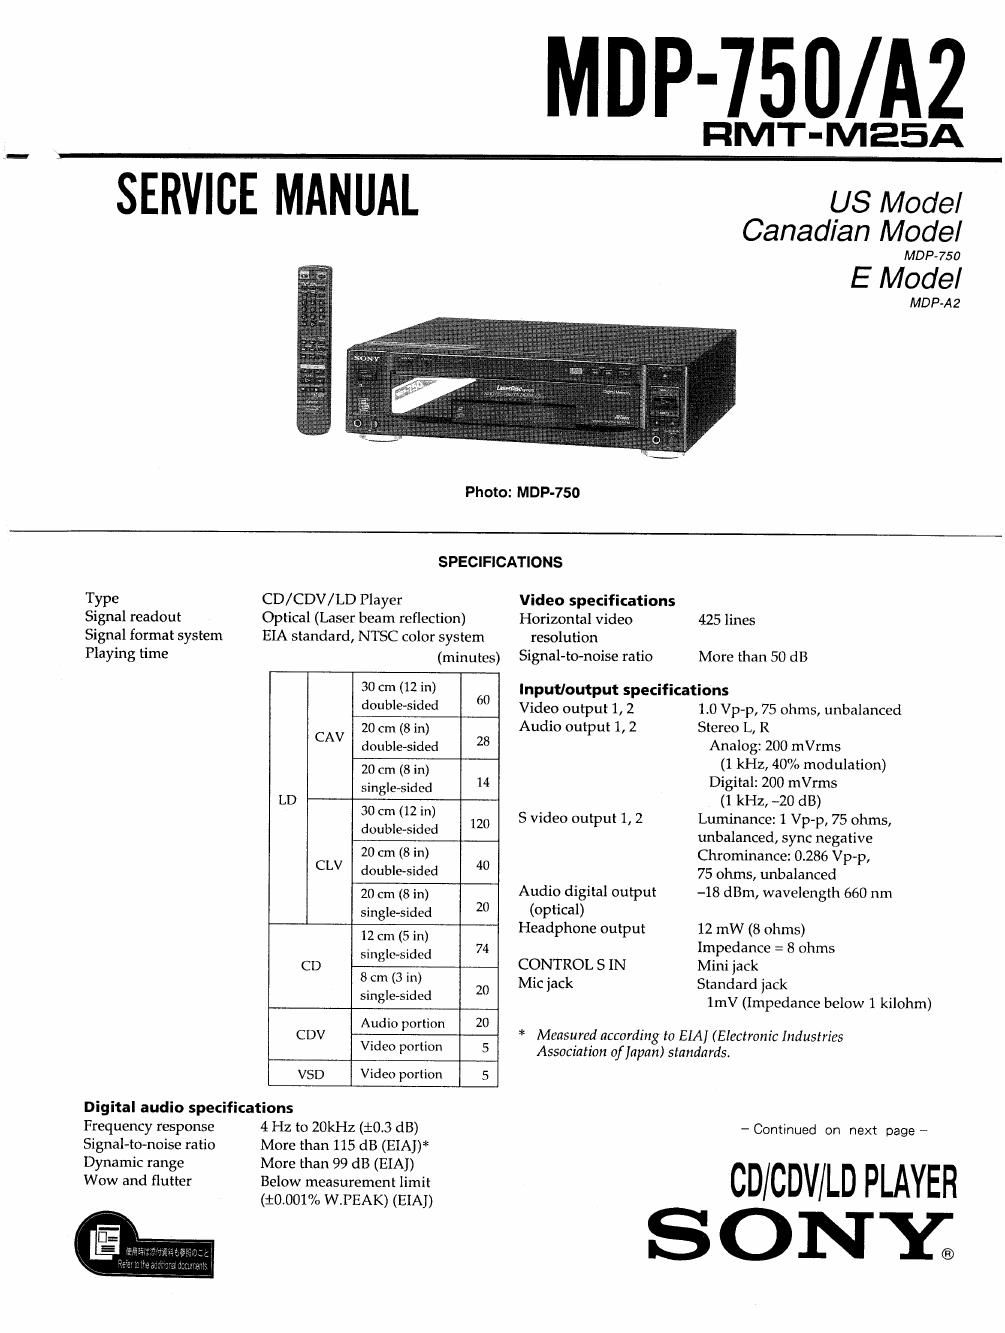 sony mdp 750 service manual